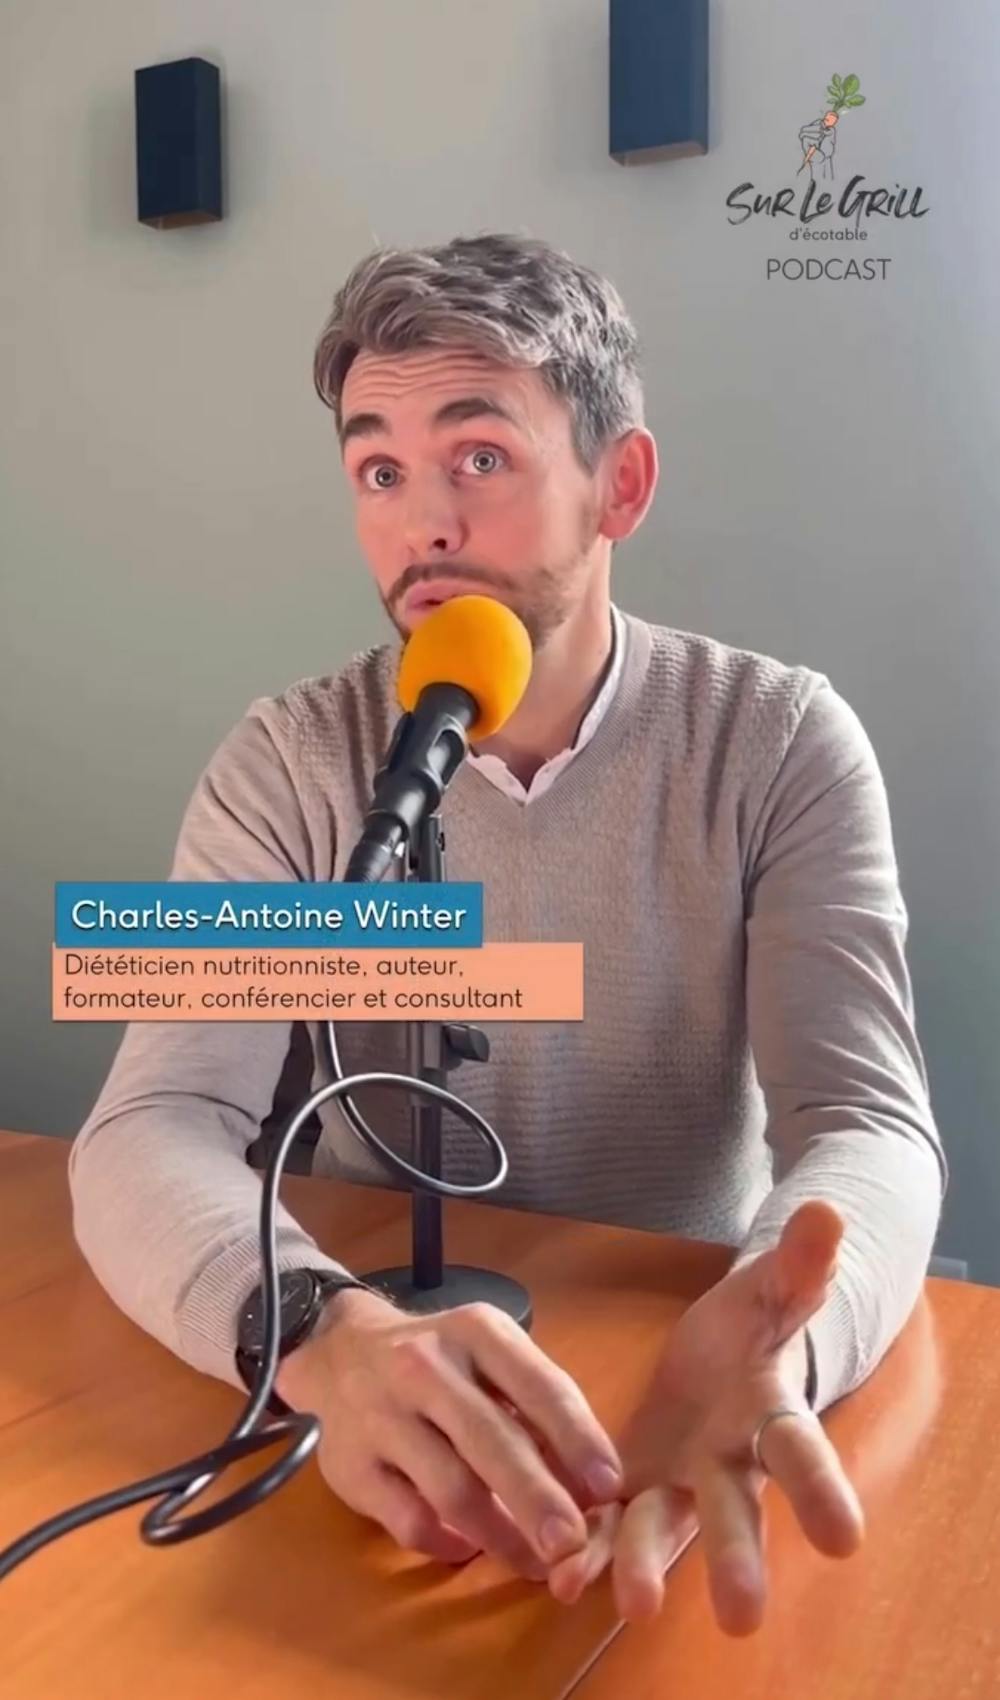 Charles-Antoine Winter dans le podcast Sur le grill d'Ecotable